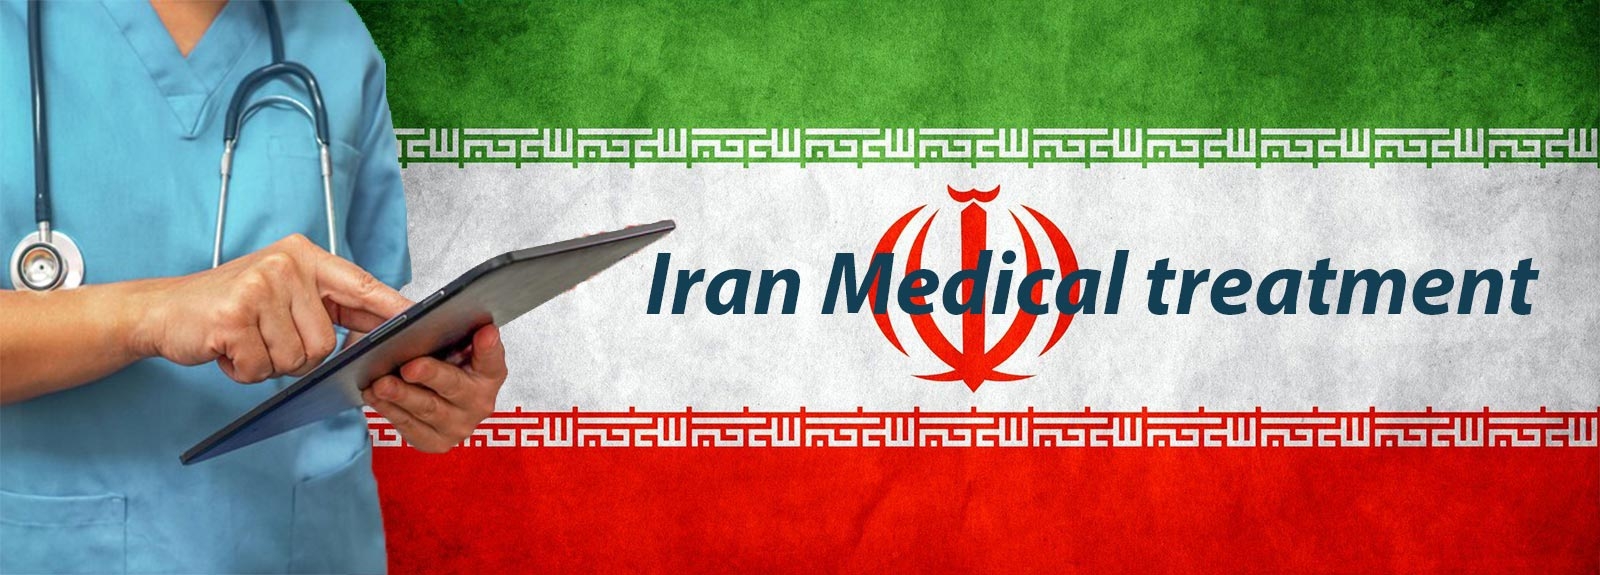 Iran Medical treatment